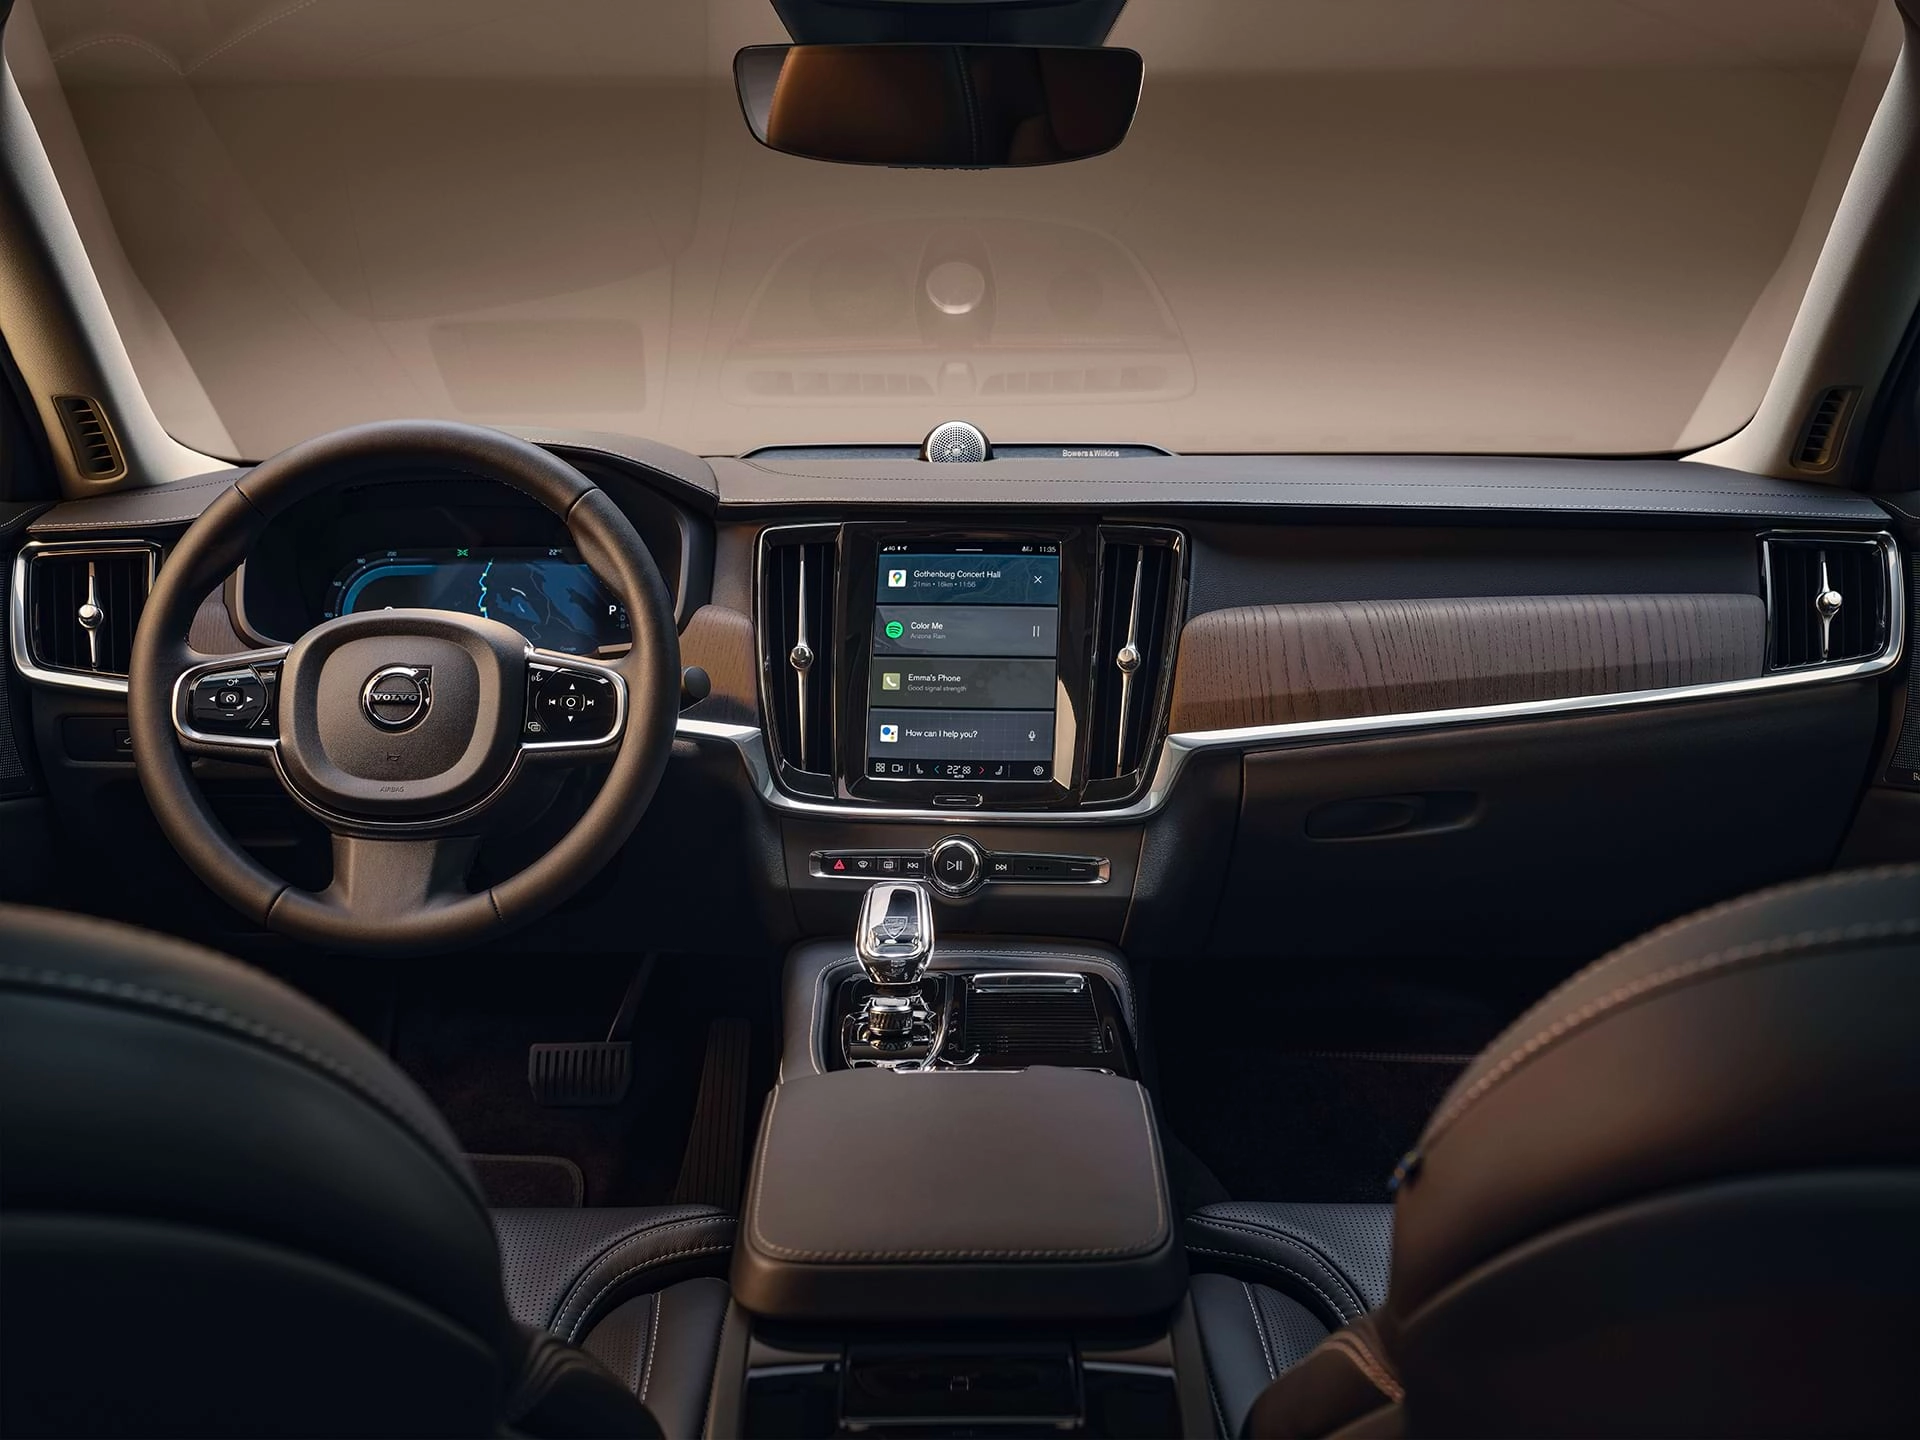 Bảng điều khiển trung tâm, màn hình hiển thị trung tâm, cần số, màn hình người lái và vô lăng trong một chiếc xe Sedan Volvo.